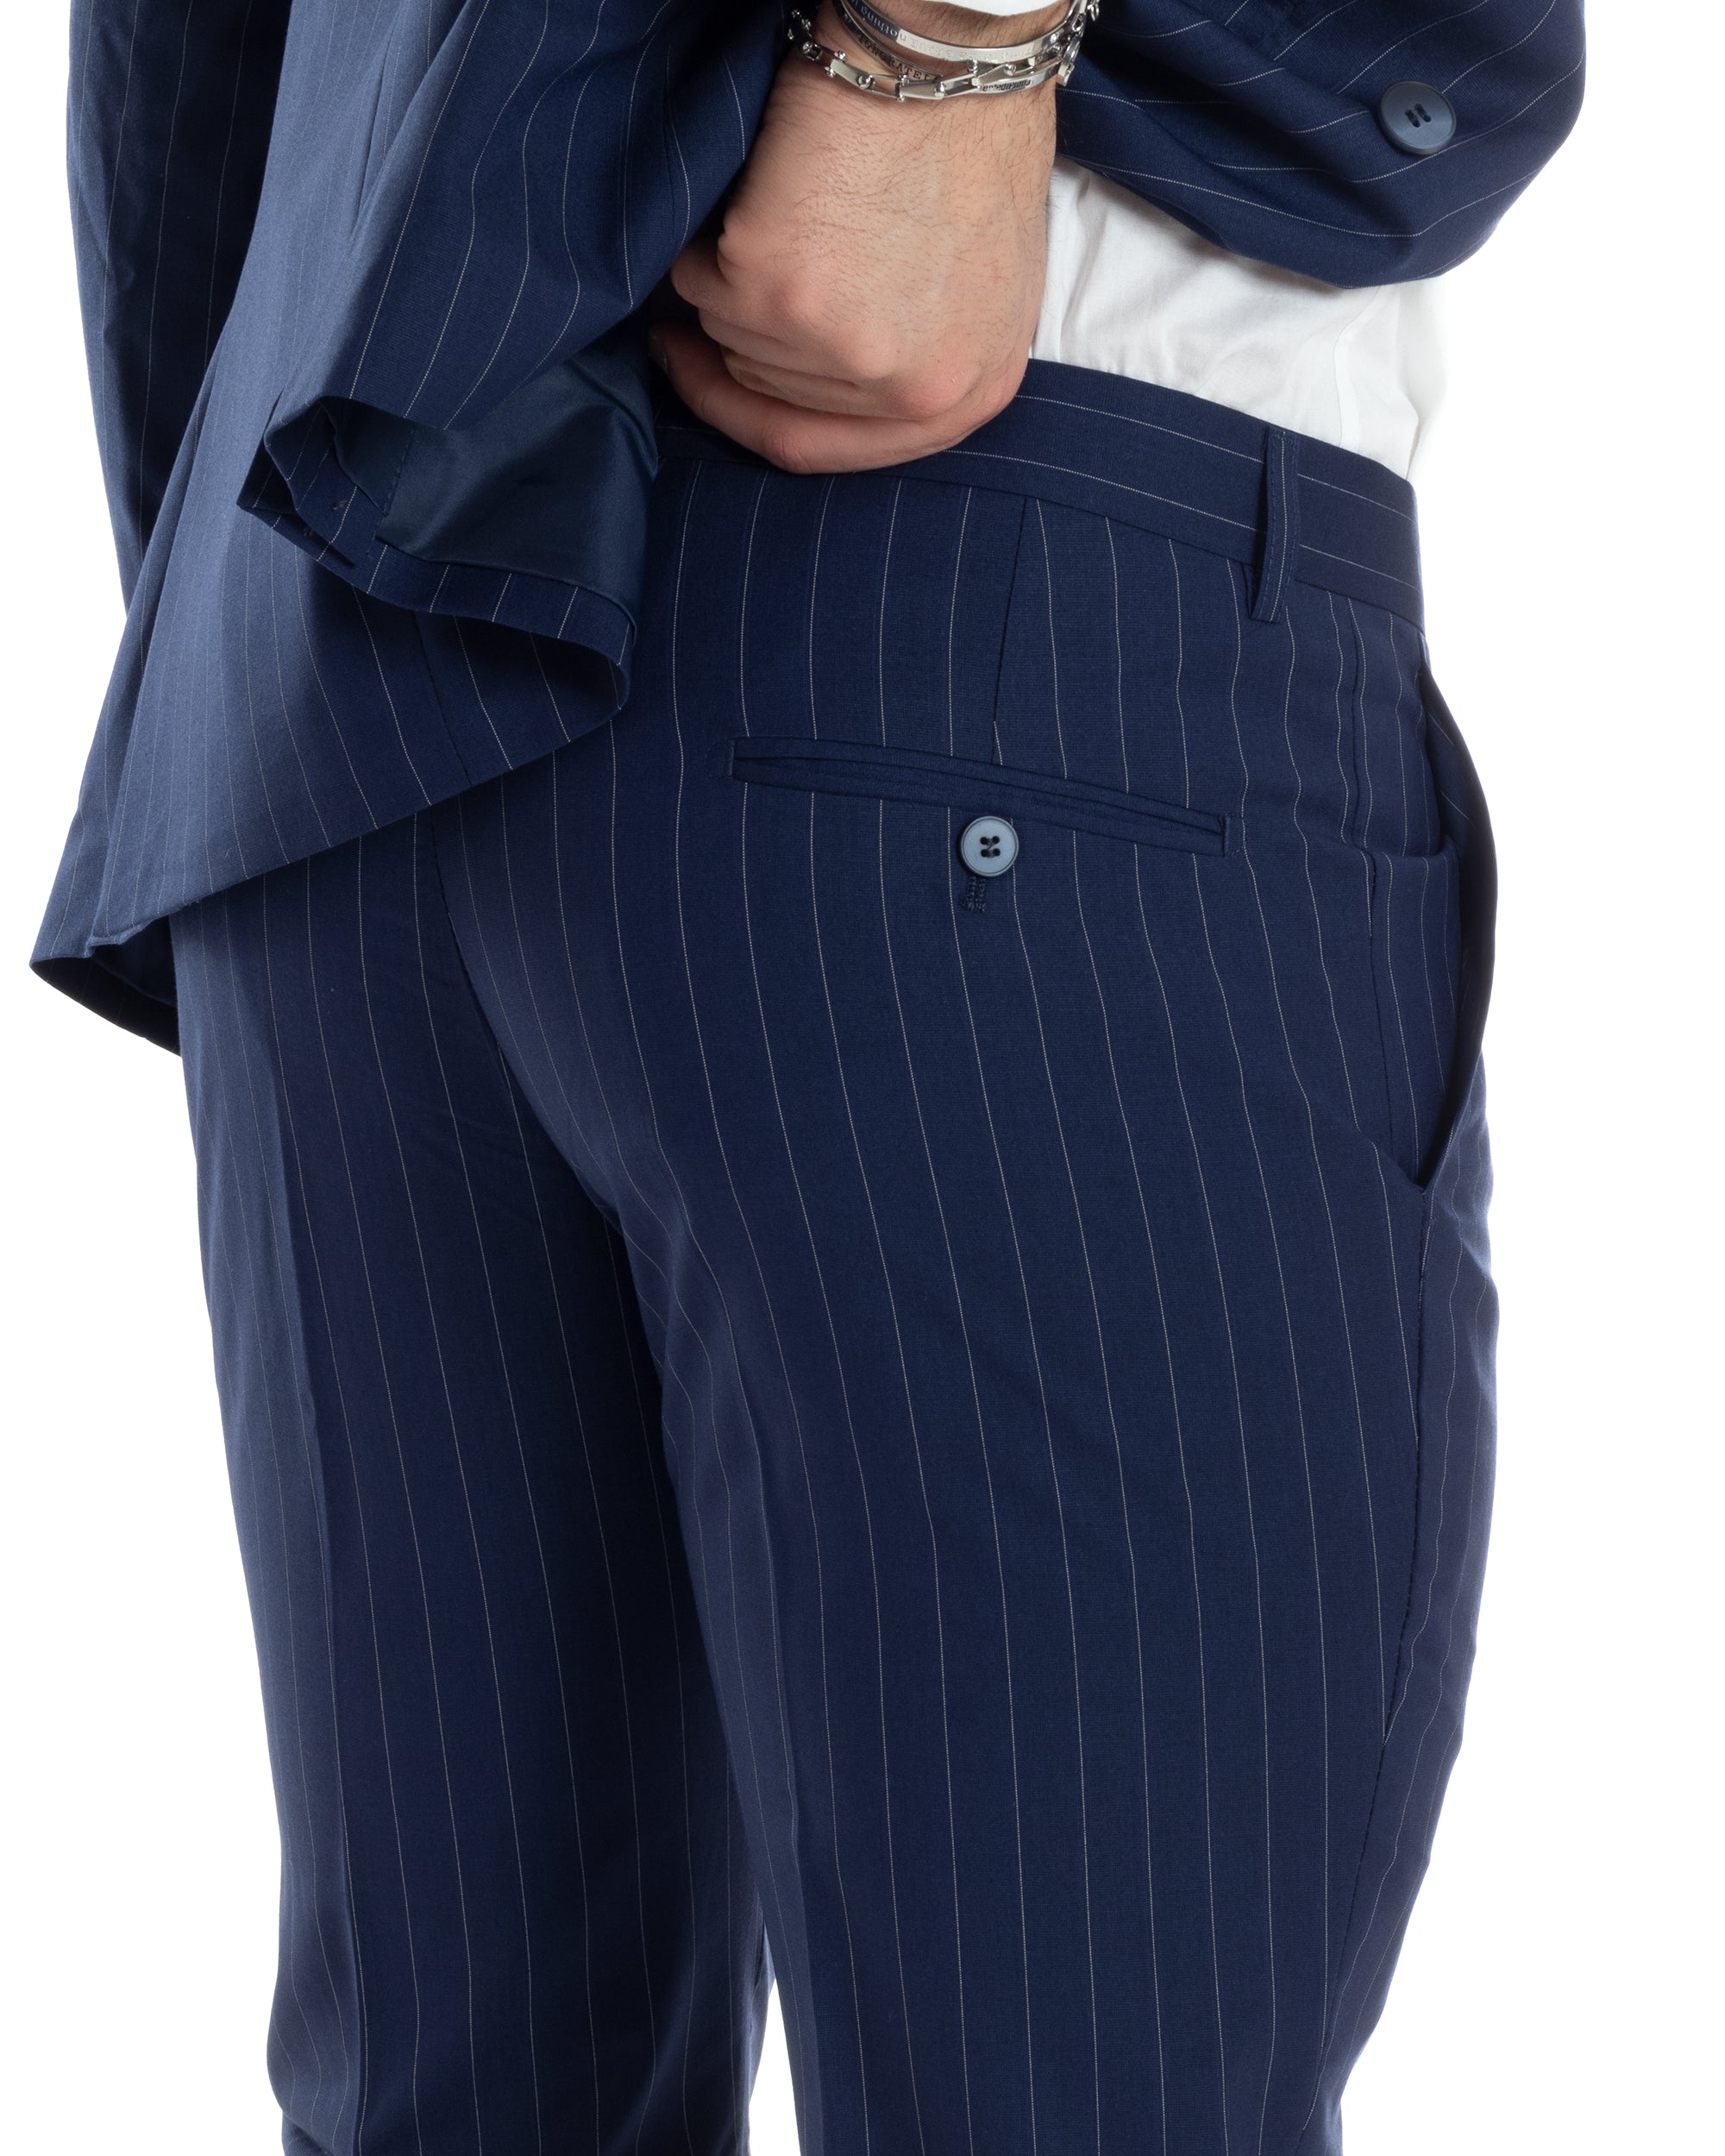 Abito Uomo Doppiopetto Vestito Completo Giacca Pantaloni Blu Gessato Elegante Casual GIOSAL-AE1027A